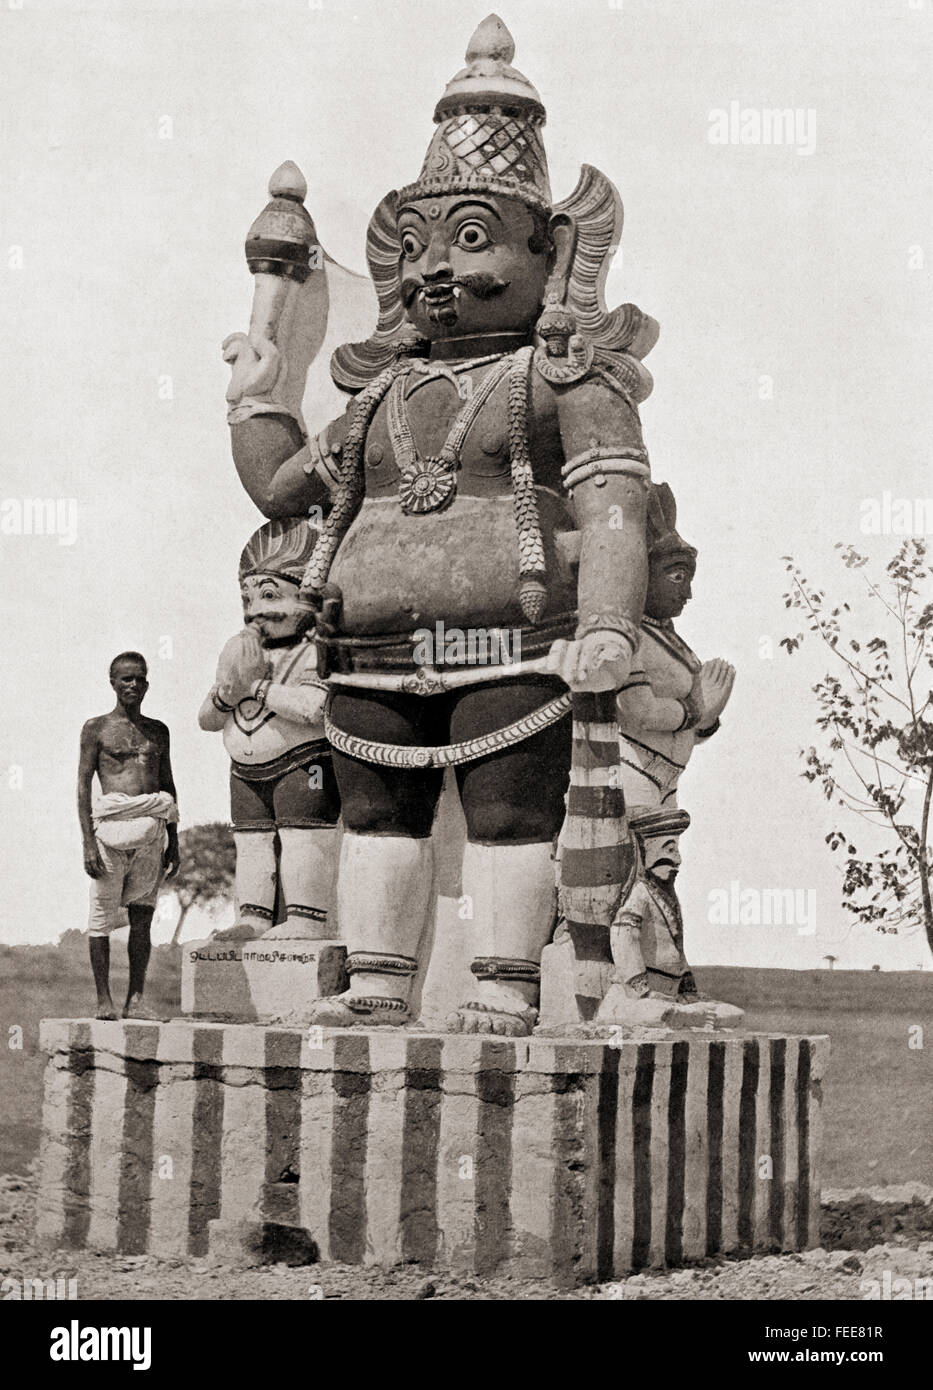 Un village du divin. Une statue colossale de la gate-keeper dieu ou Dvarapala,tenant une gadha mace et avec ses serviteurs, dans Tamilakam et à l'ancien pays tamoul, le sud de l'Inde. Banque D'Images